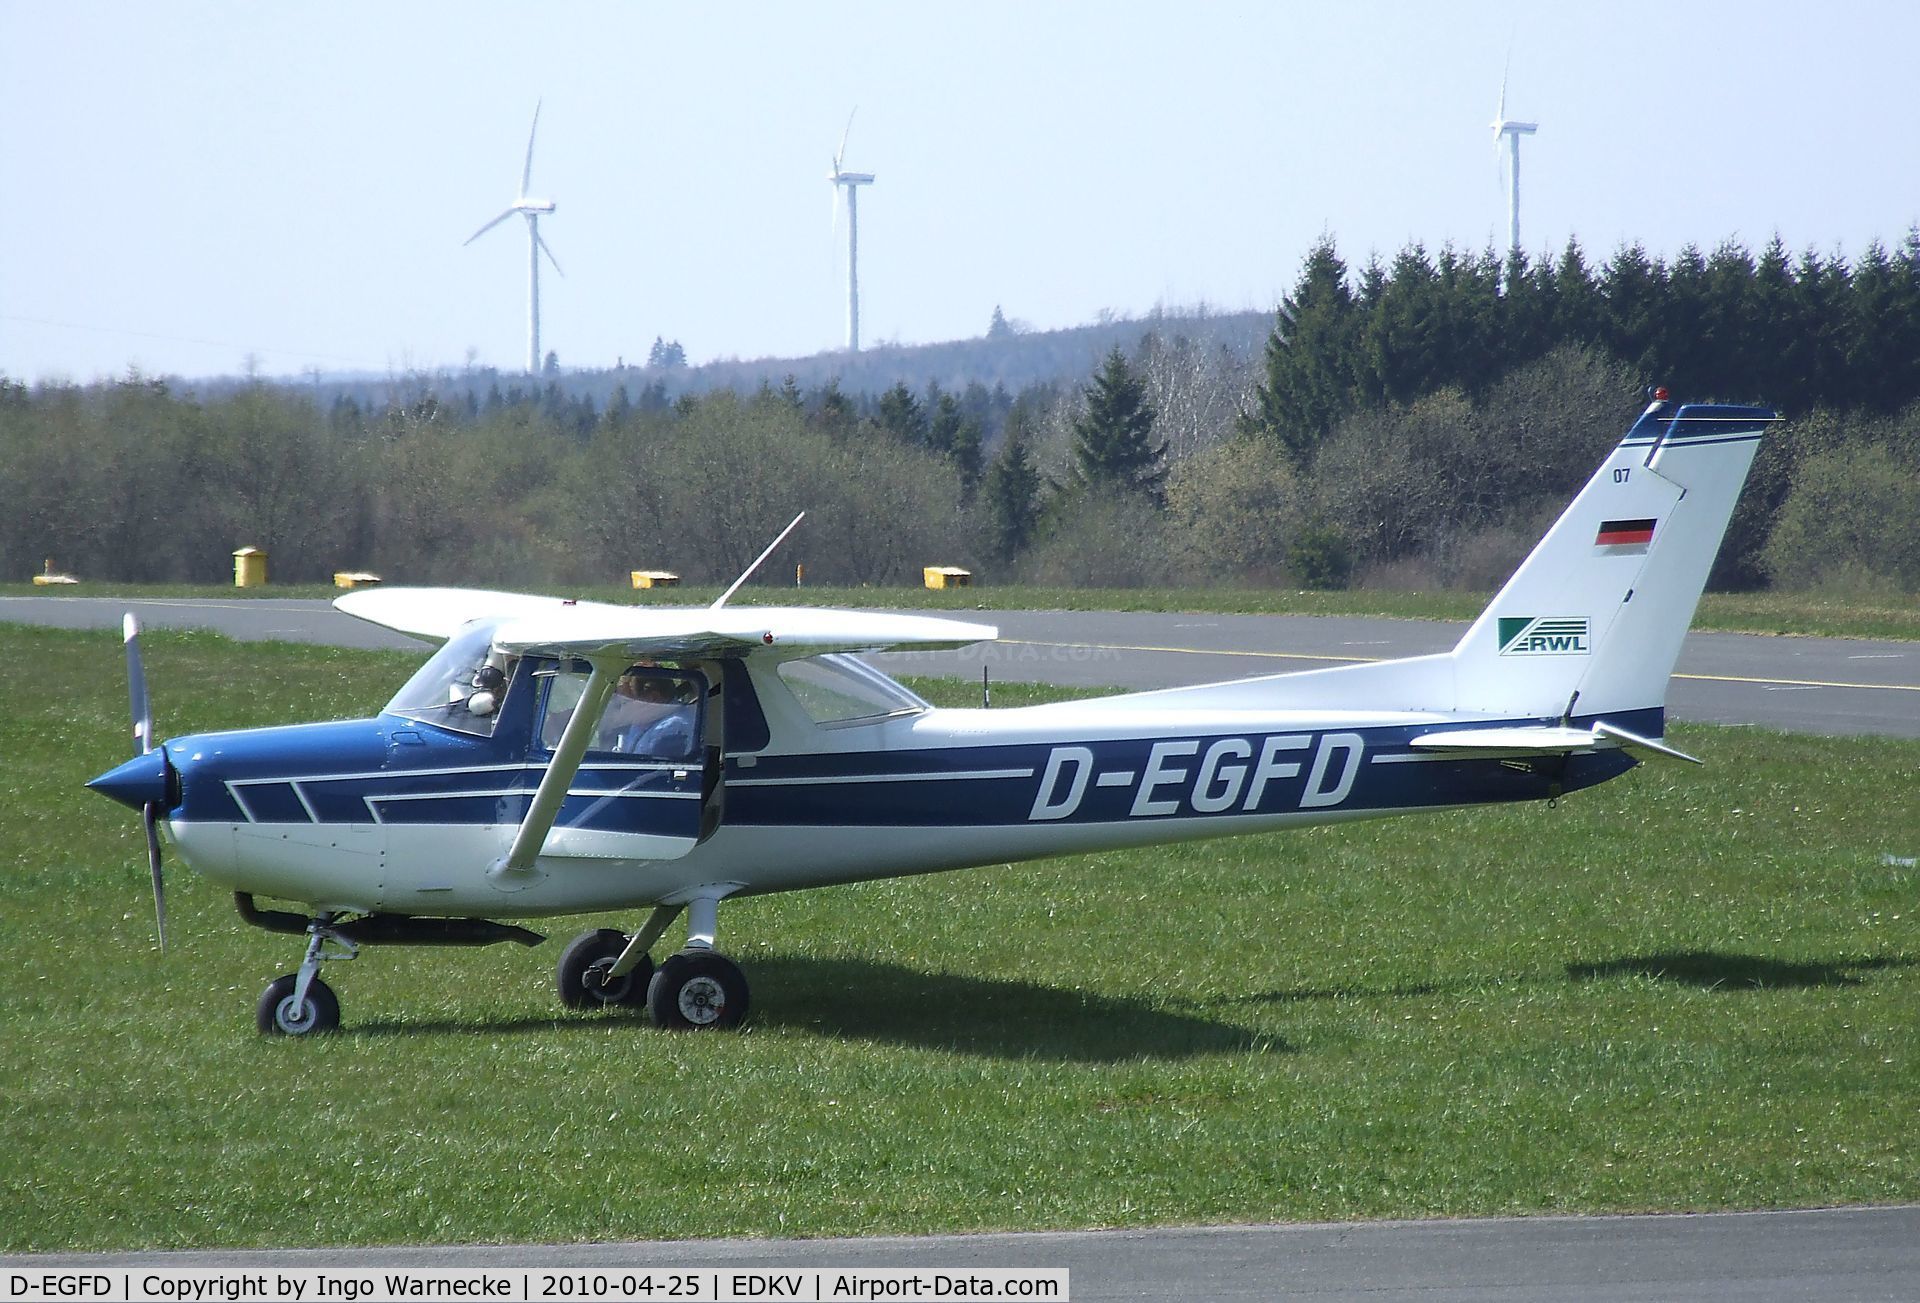 D-EGFD, Reims F152 C/N 1630, Cessna (Reims) F152 at Dahlemer Binz airfield